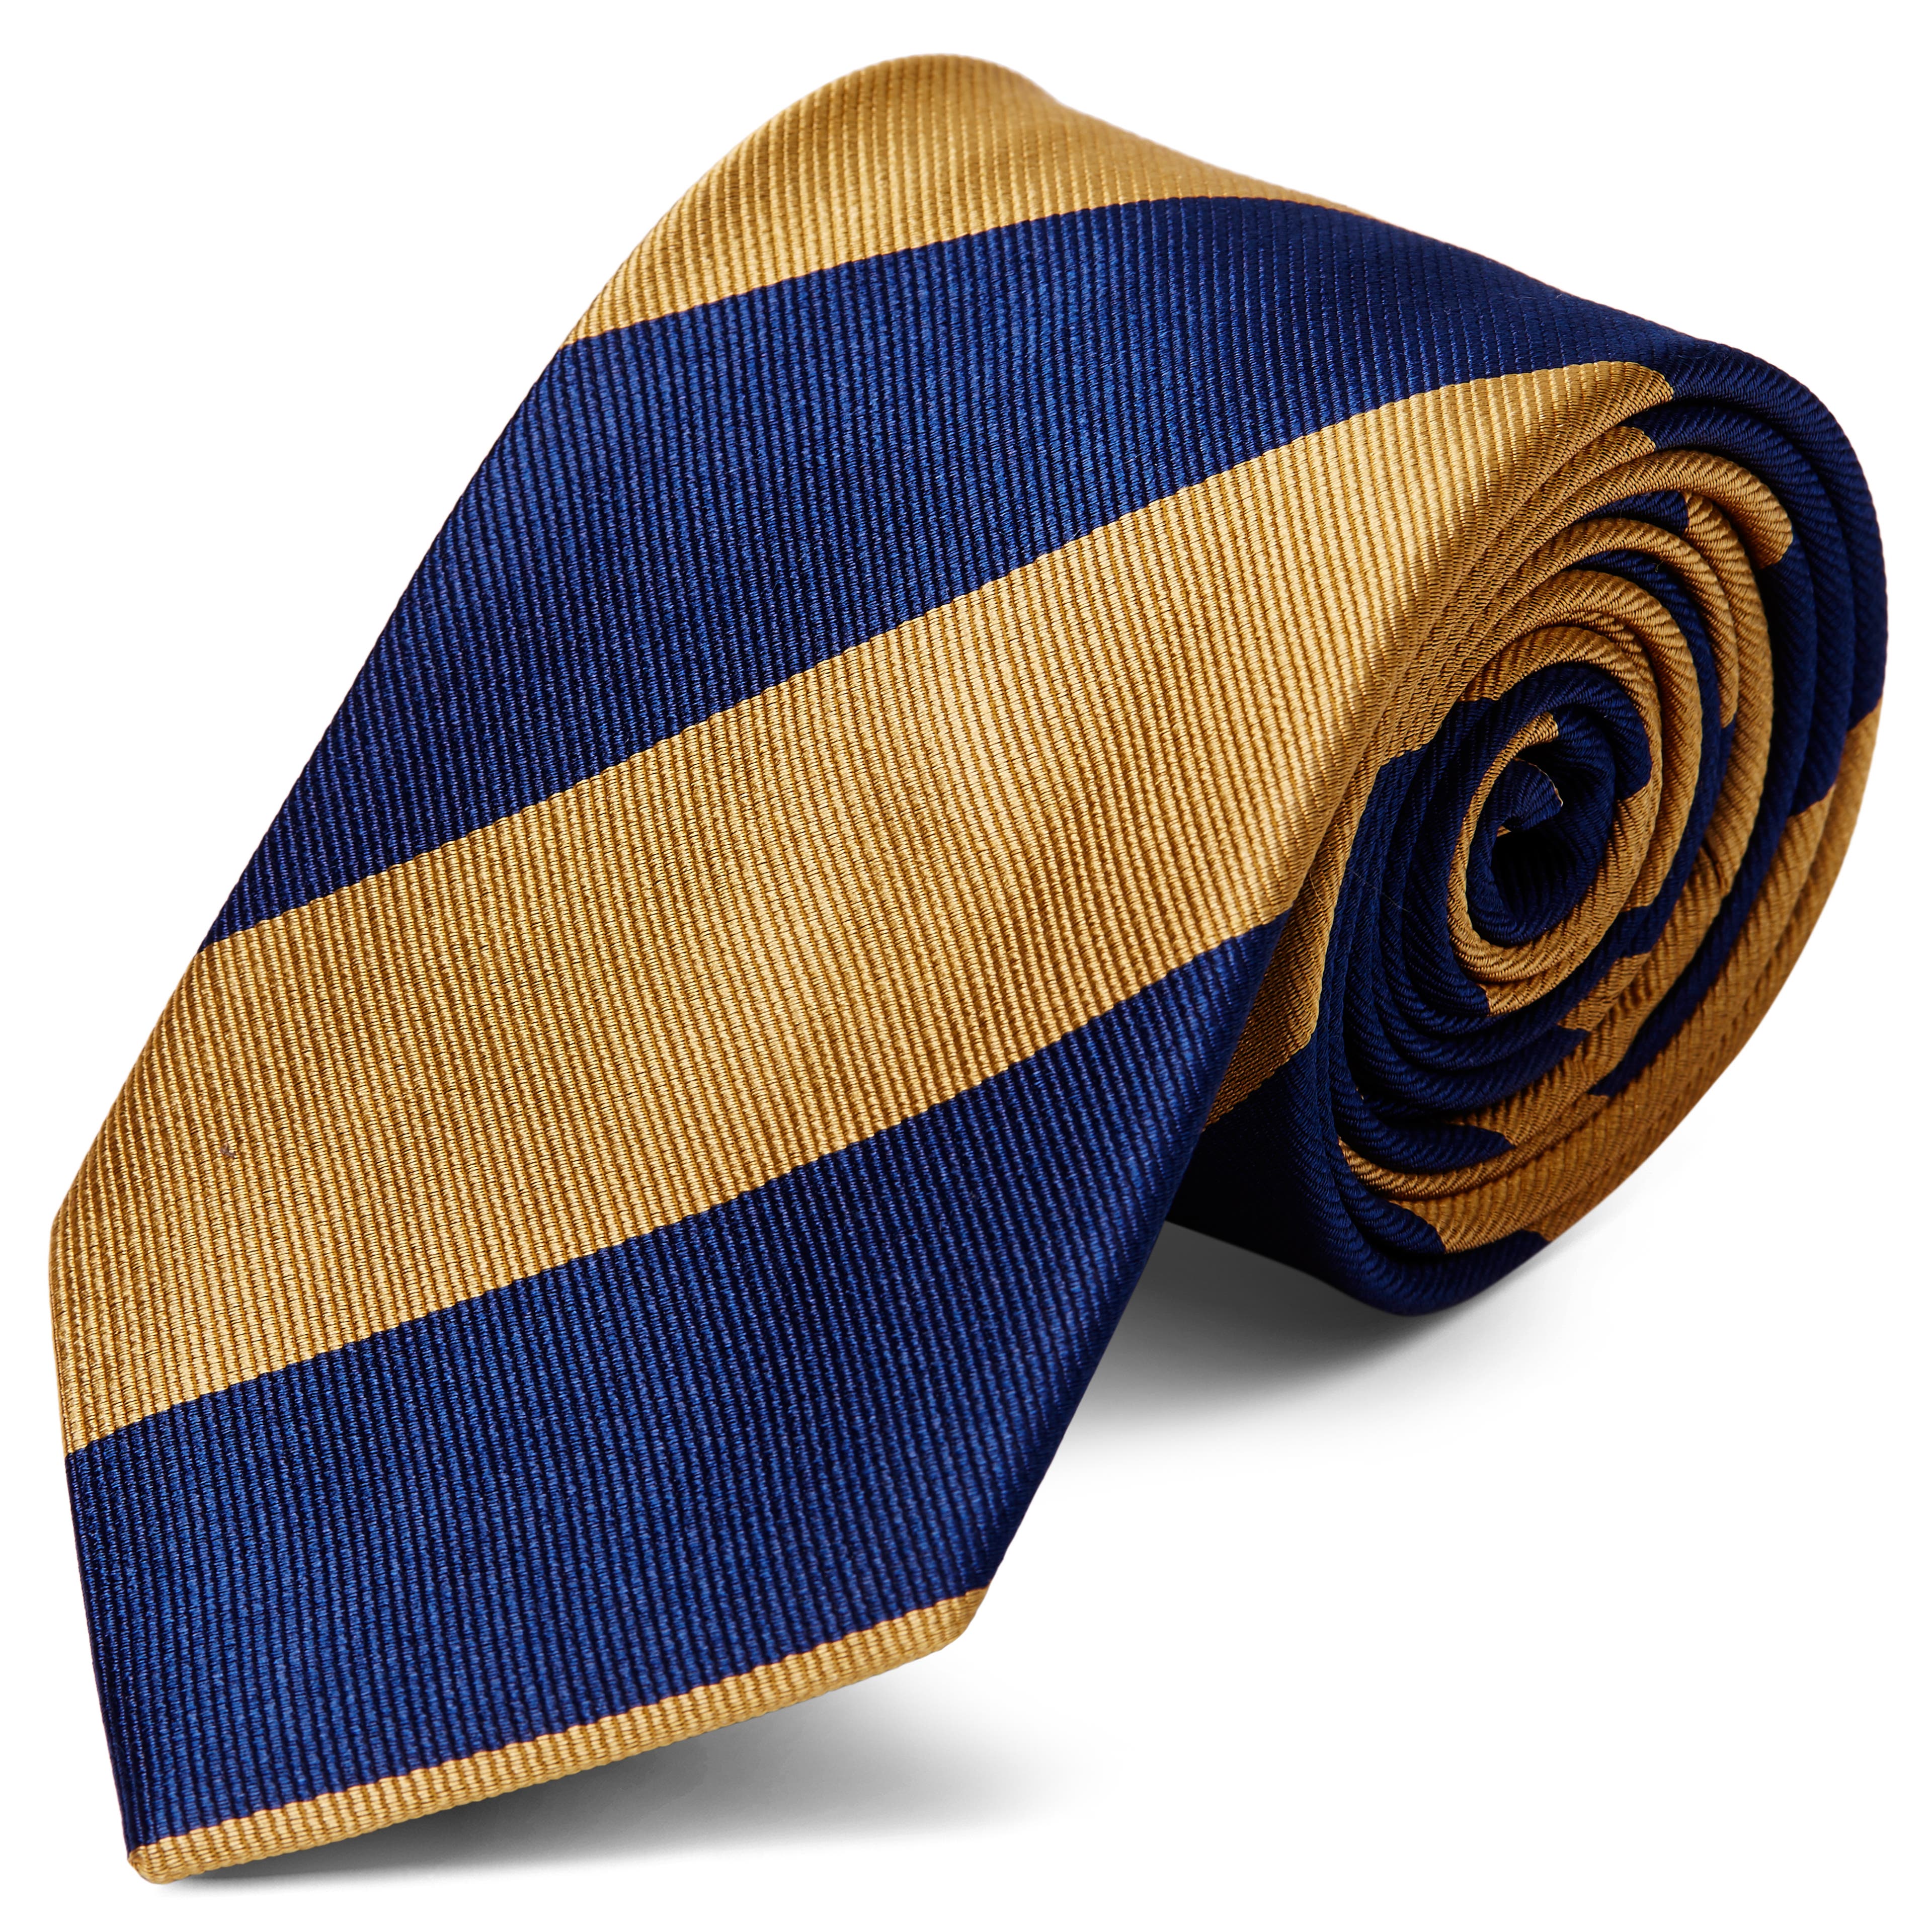 Cravată 8 cm din mătase cu dungi bleumarin și aurii